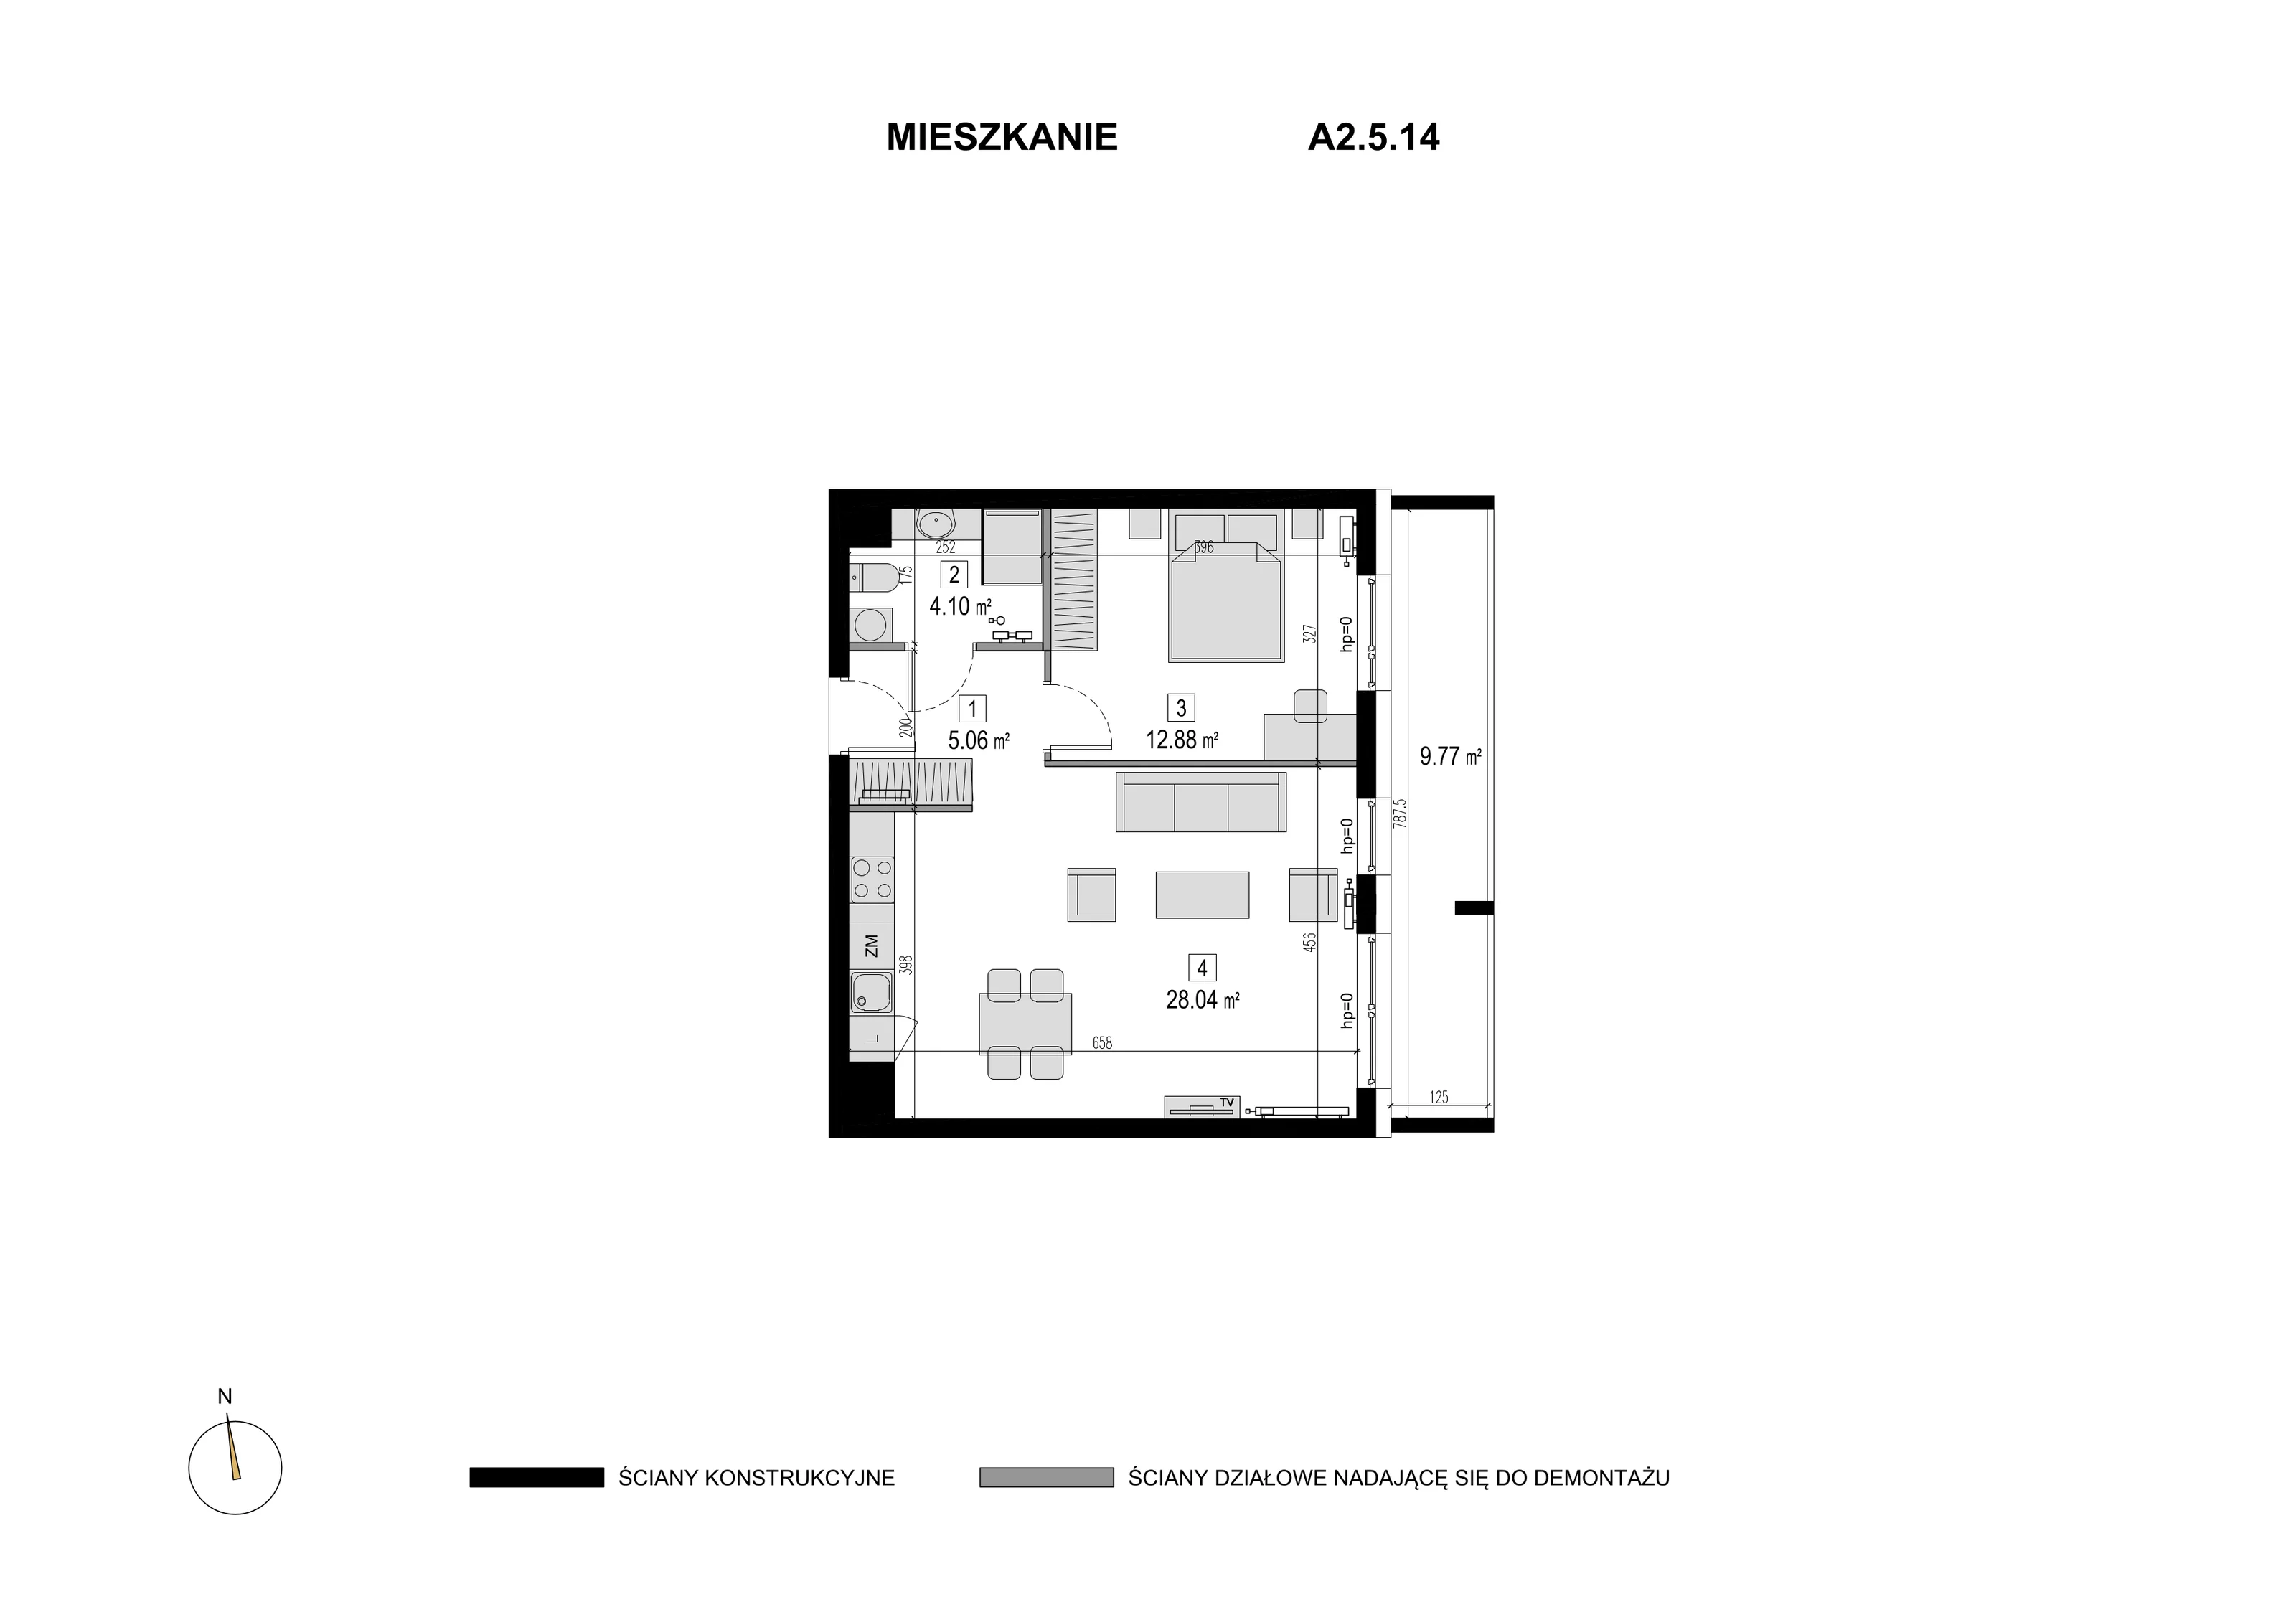 Mieszkanie 50,08 m², piętro 4, oferta nr A2.5.14, Novaforma, Legnica, ul. Chojnowska